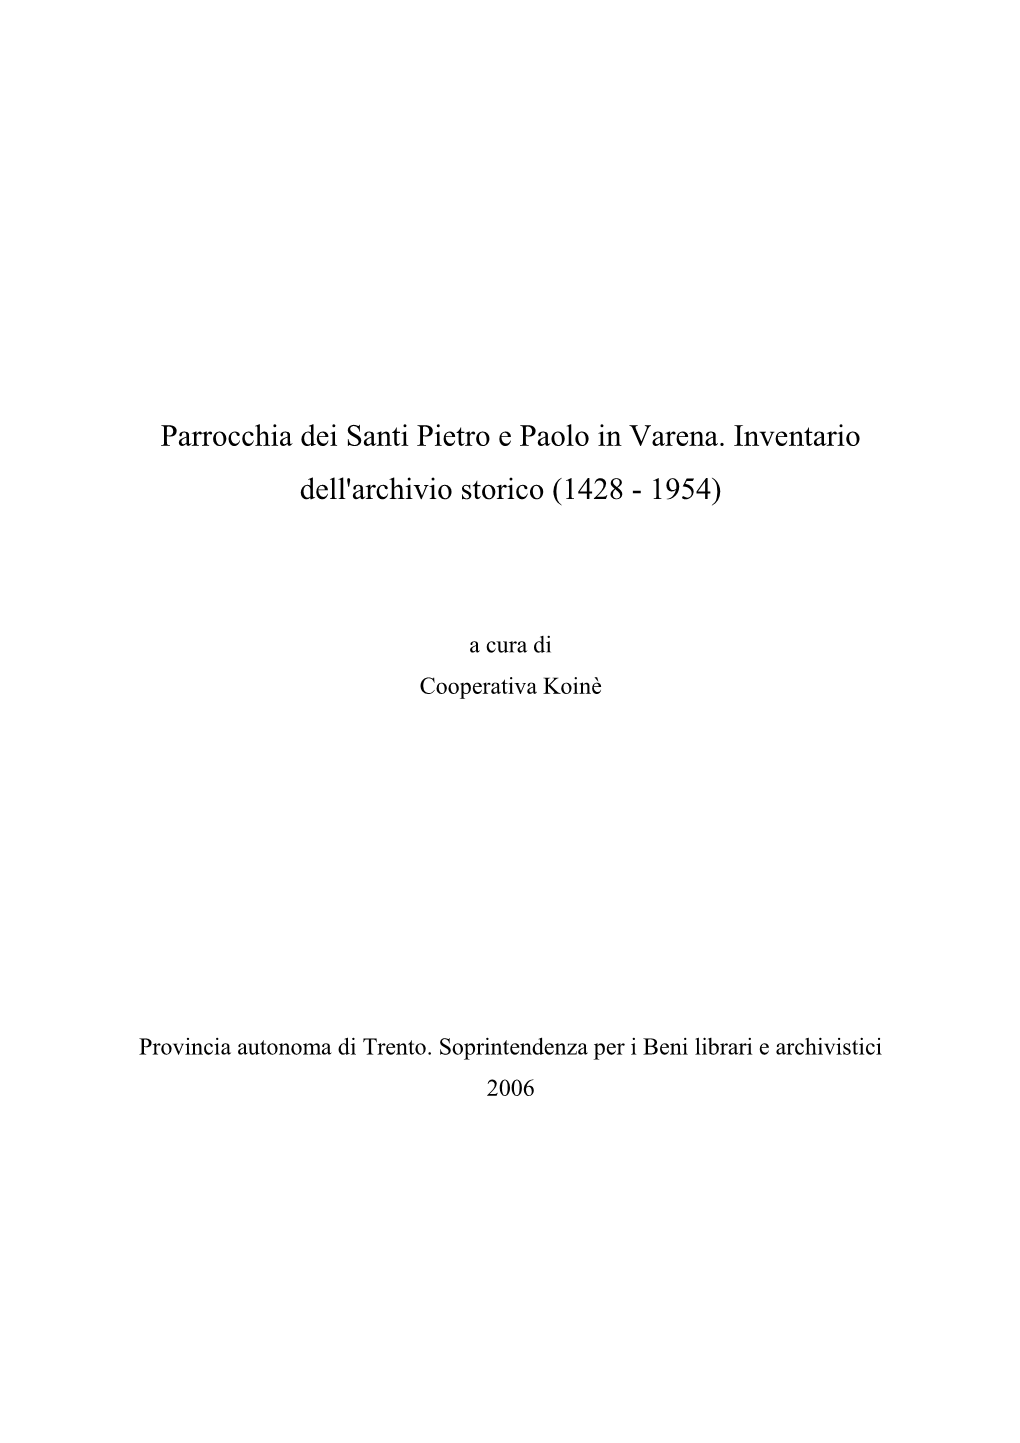 Parrocchia Dei Santi Pietro E Paolo in Varena. Inventario Dell'archivio Storico (1428 - 1954)